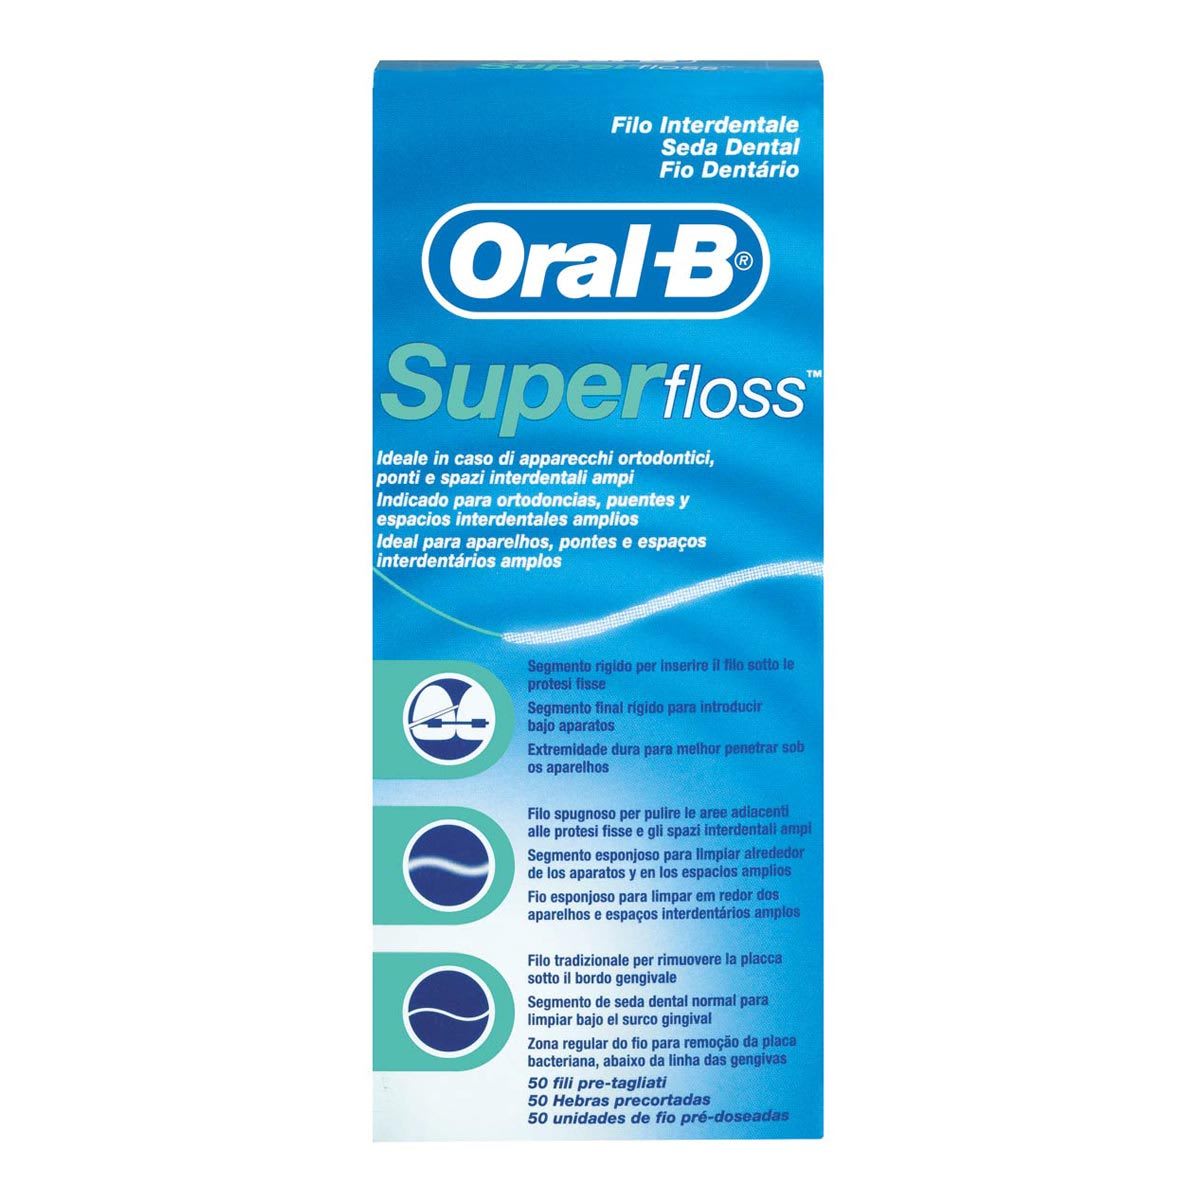 Filo interdentale Oral-B Super Floss 